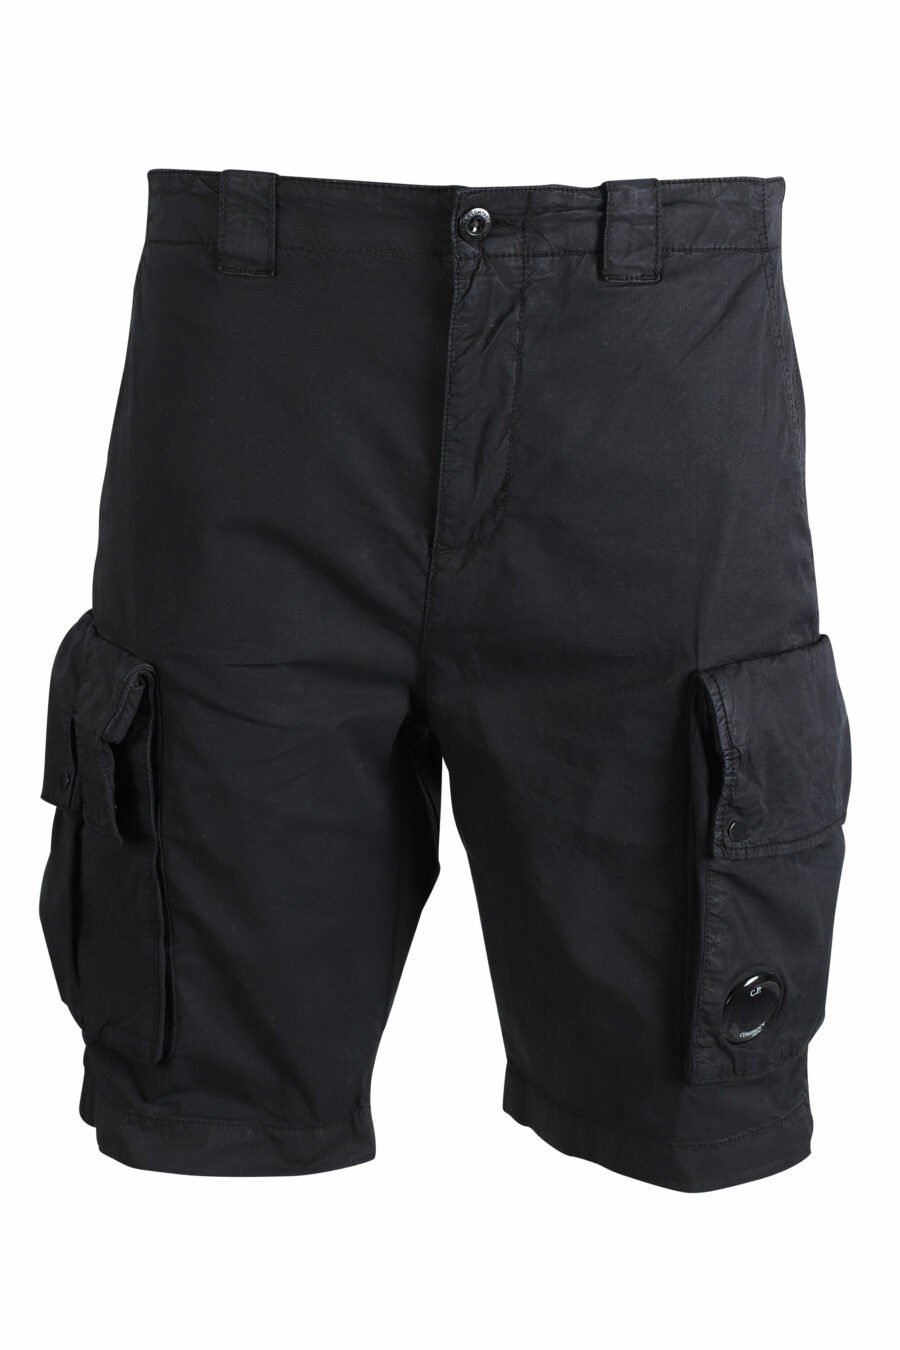 Short noir avec poches latérales et mini logo circulaire - IMG 9478